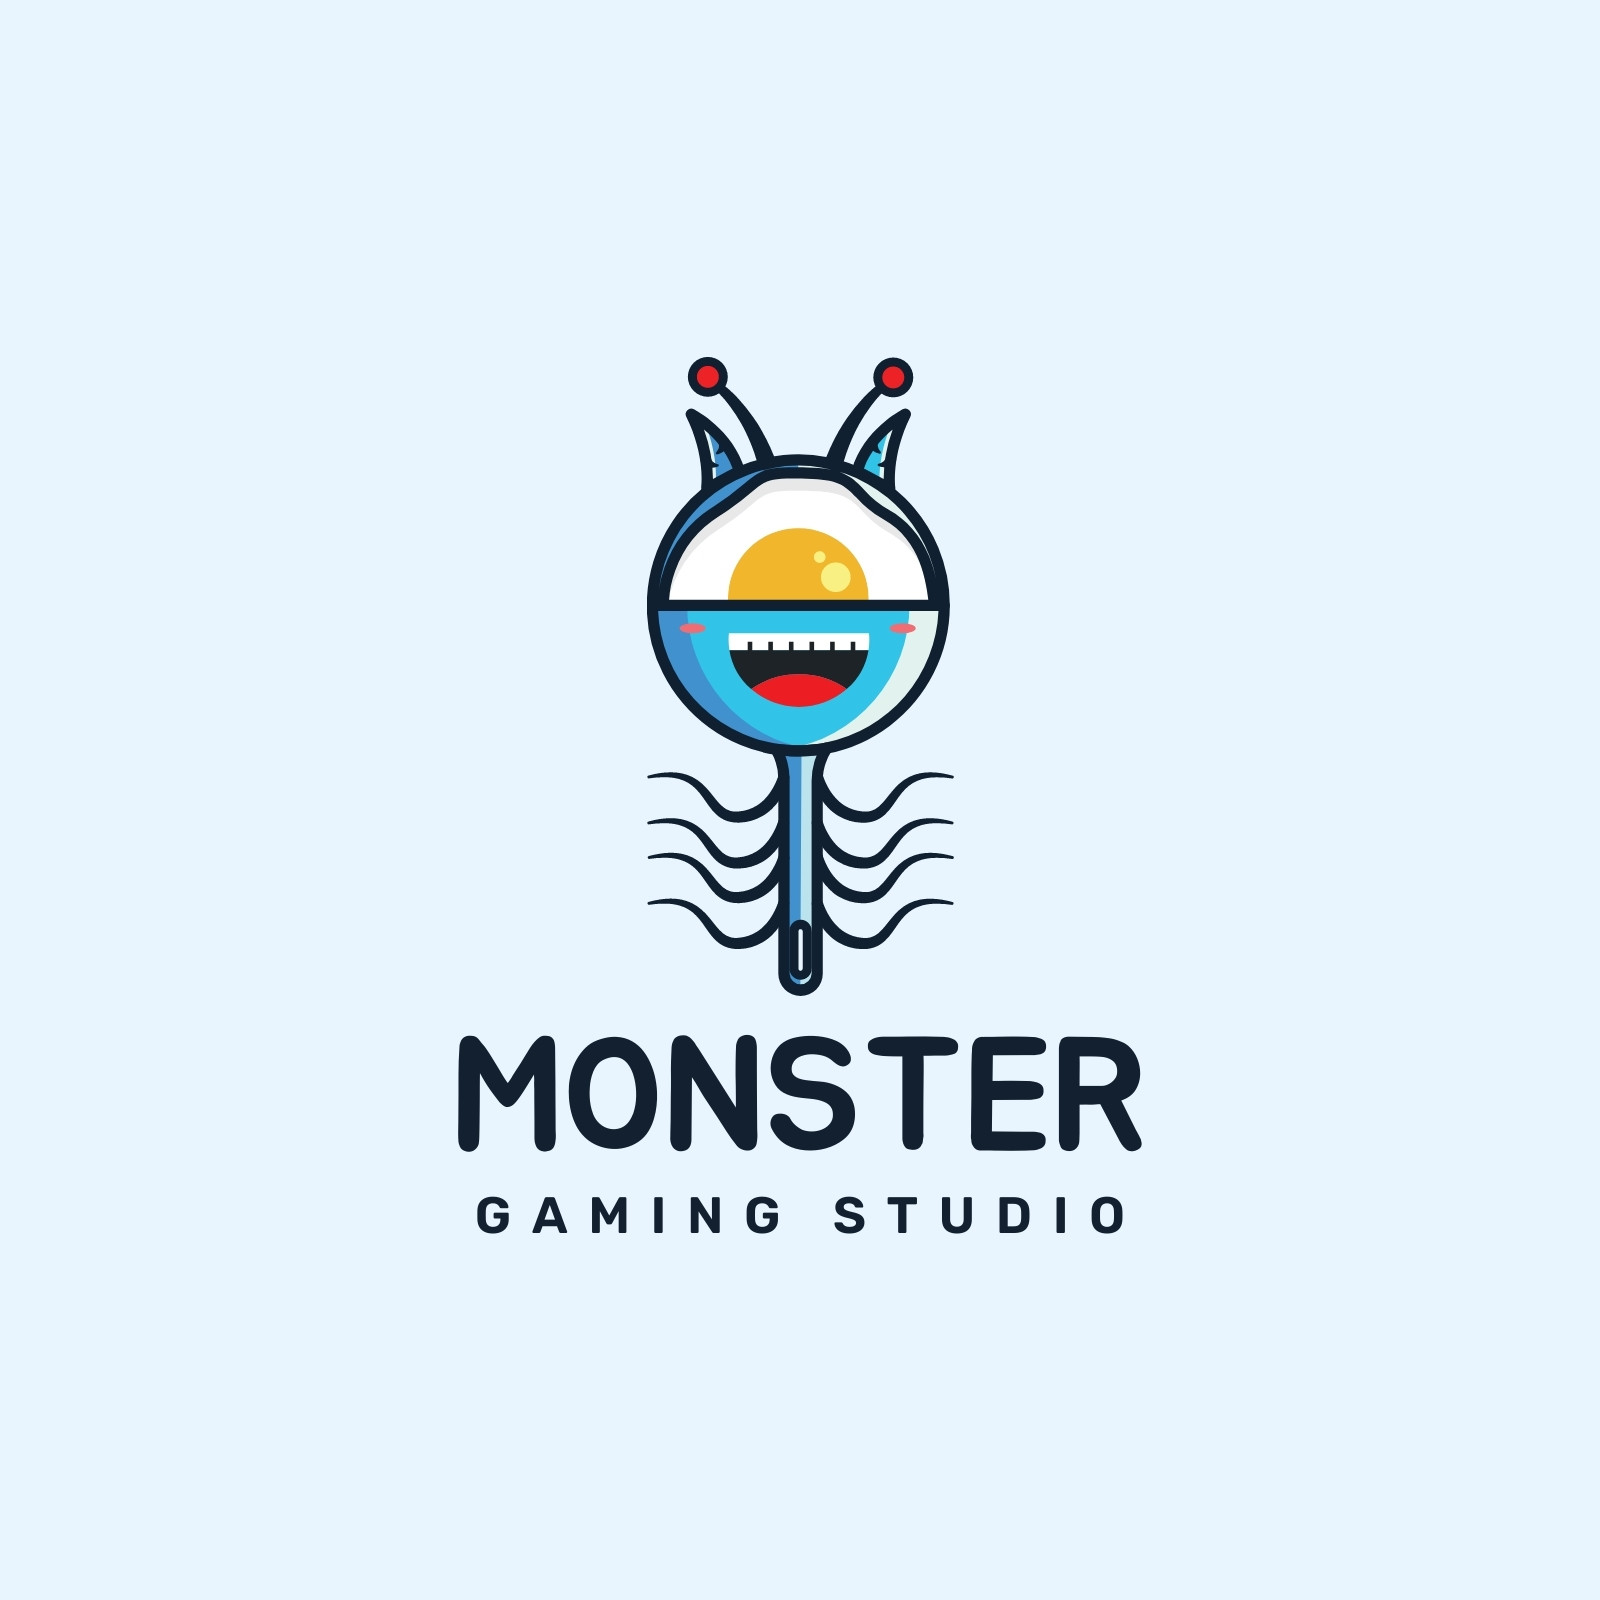 Monster Logo Maker | Create Monster logos in minutes